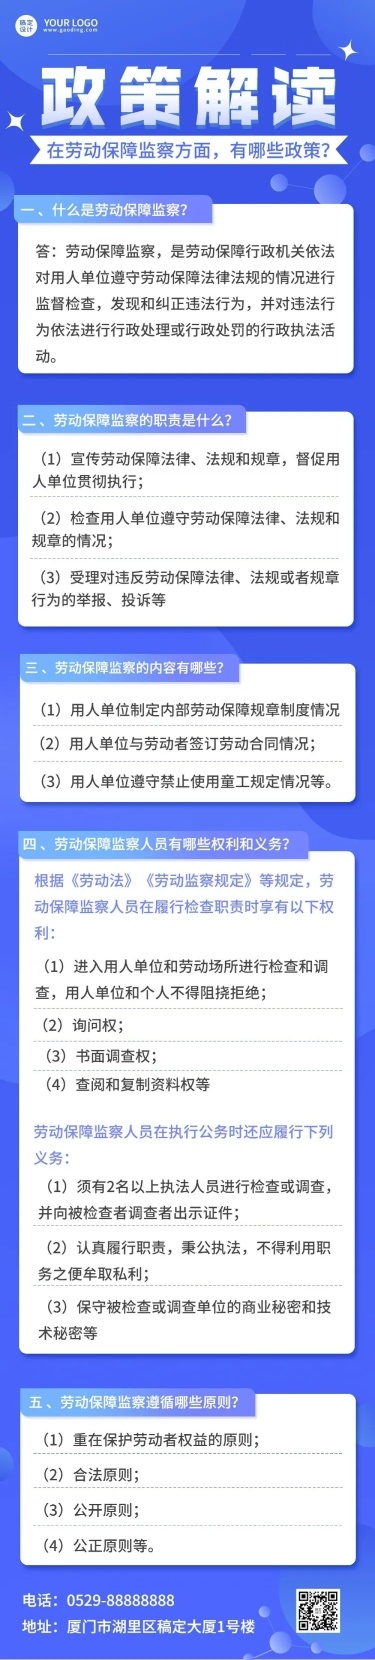 融媒体劳动保障政策资讯问答文章长图